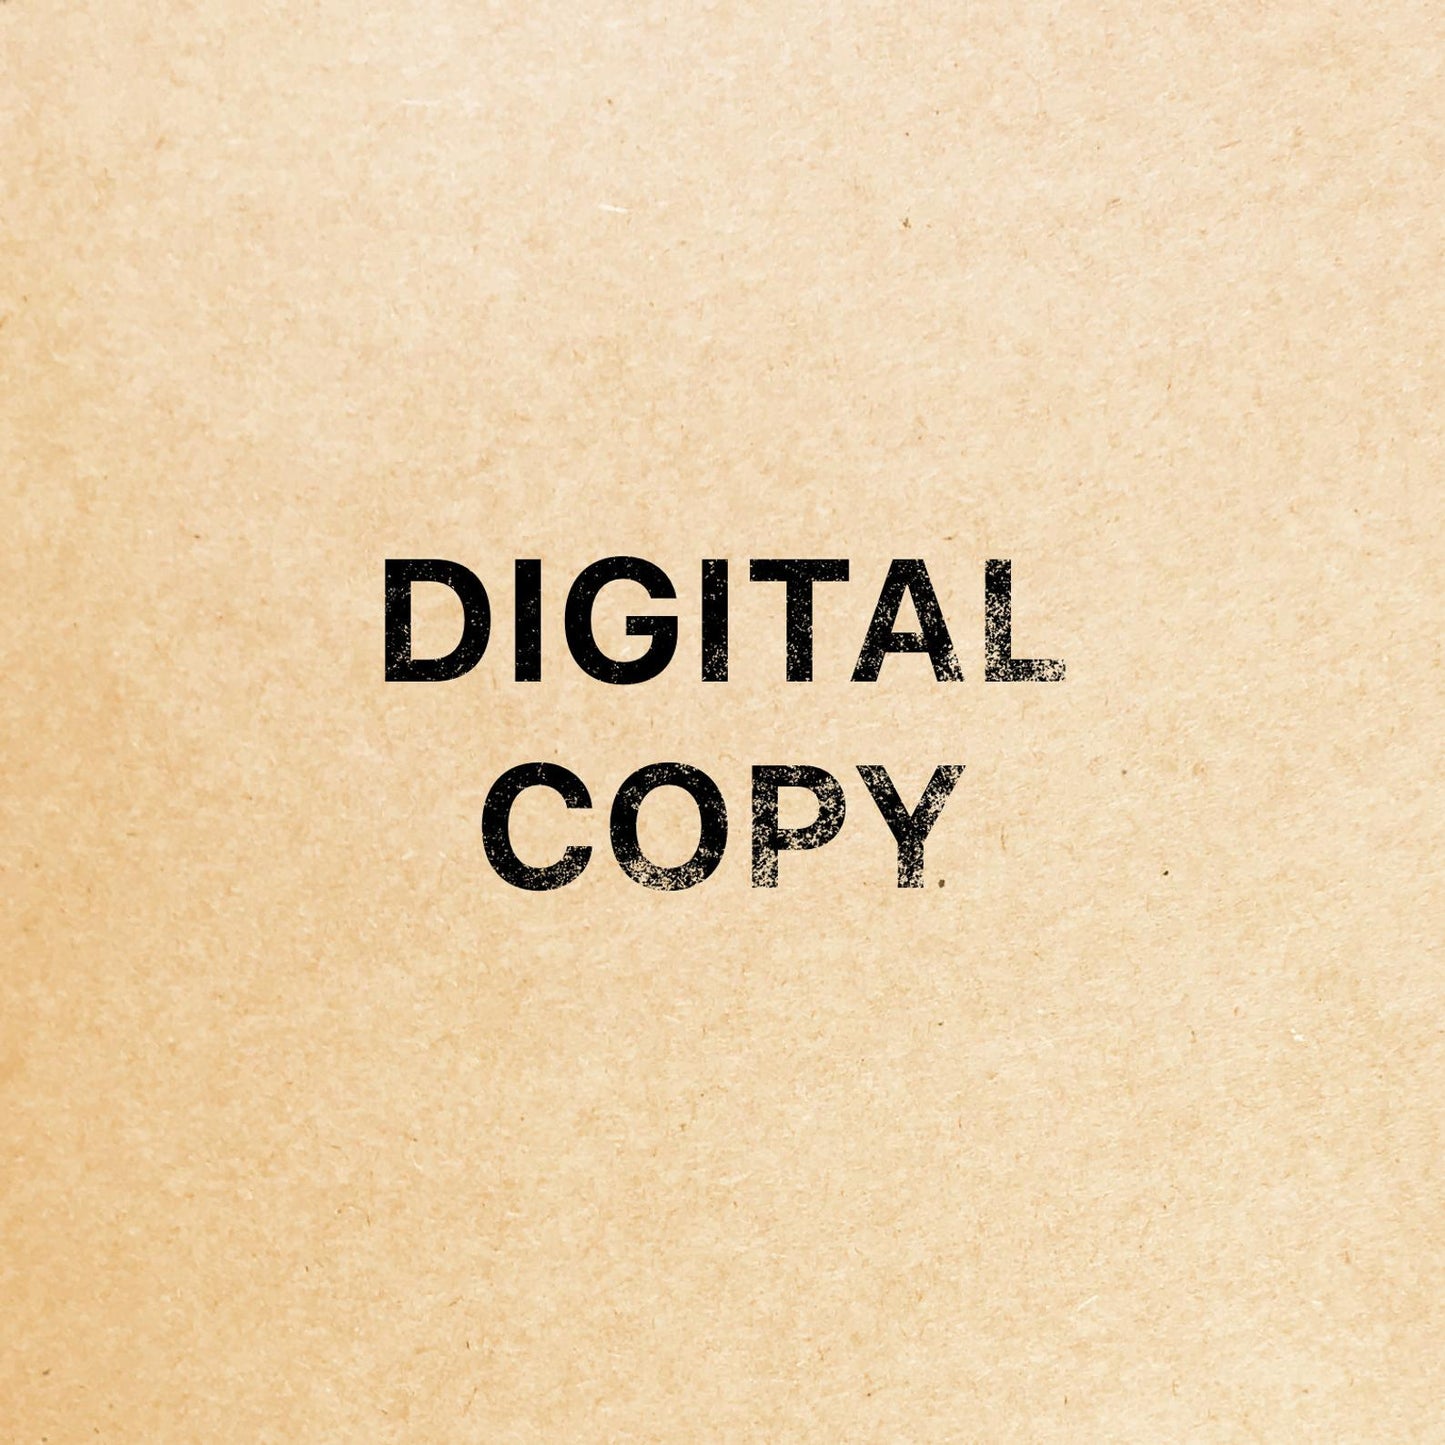 Digital copy of the stamp design (PDF & PNG formats)